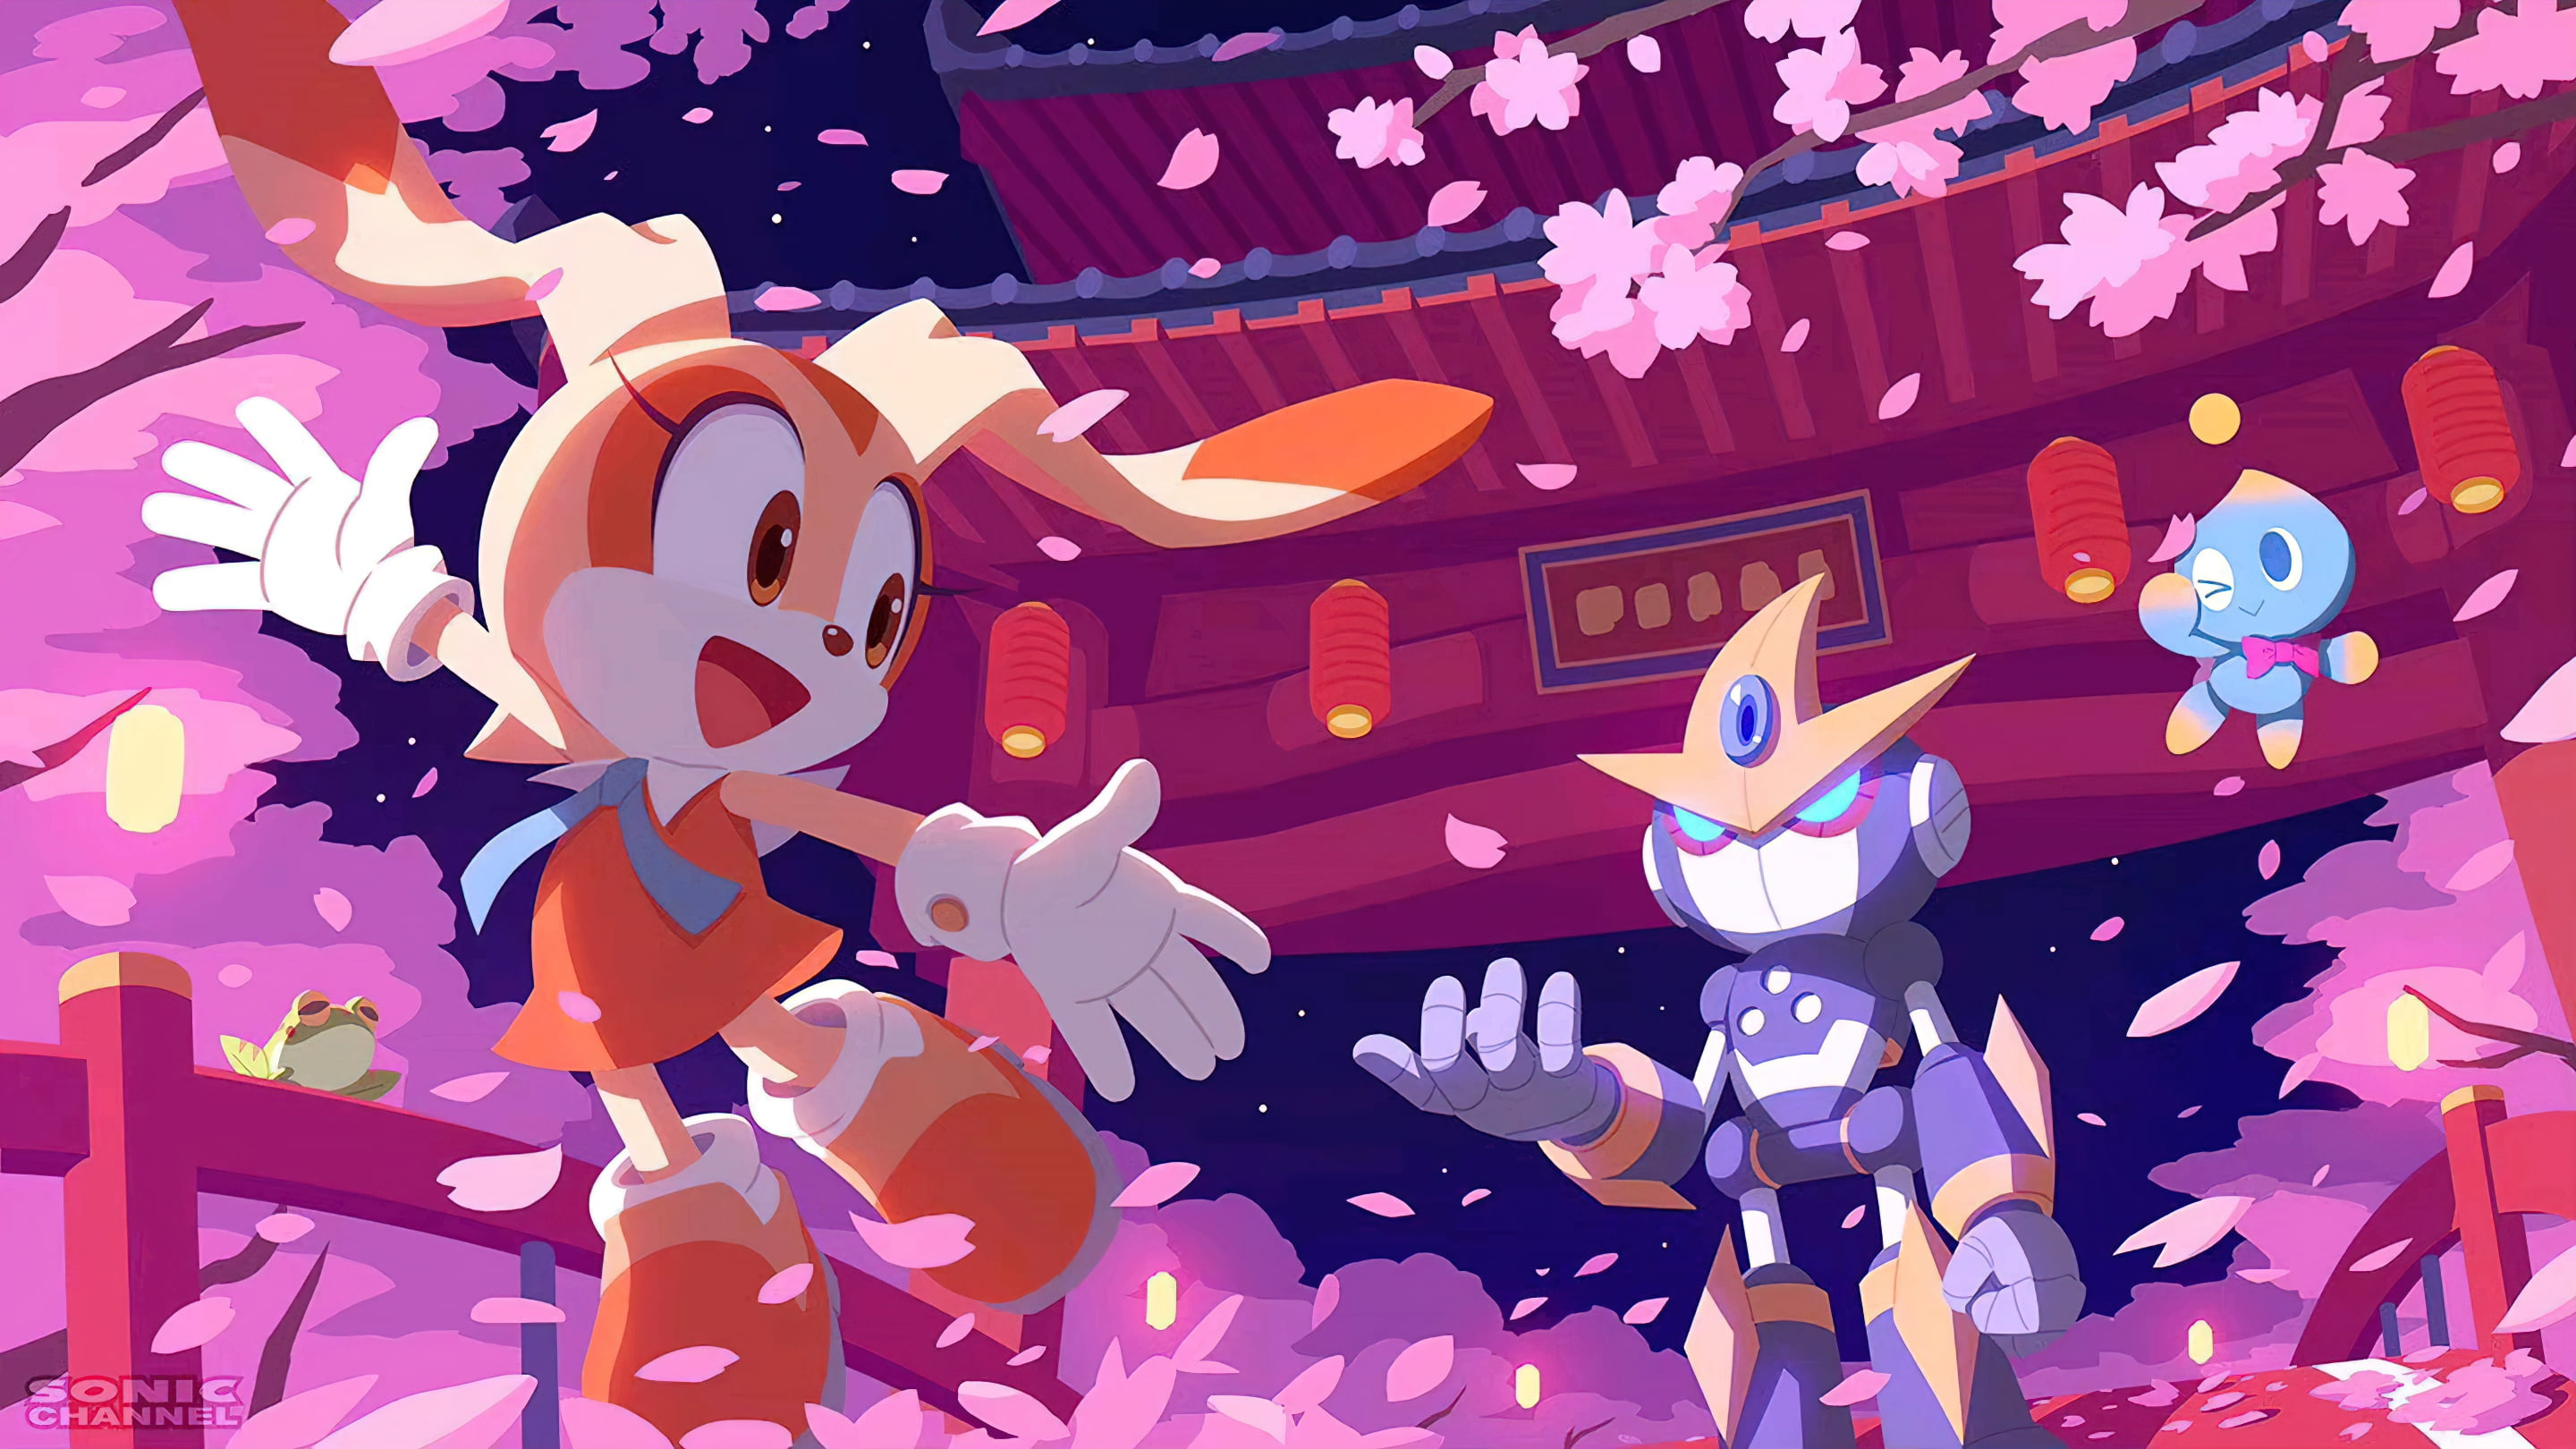 blossoms, Sakura (artist), Cream, chao, temple, lantern, Peach blossom